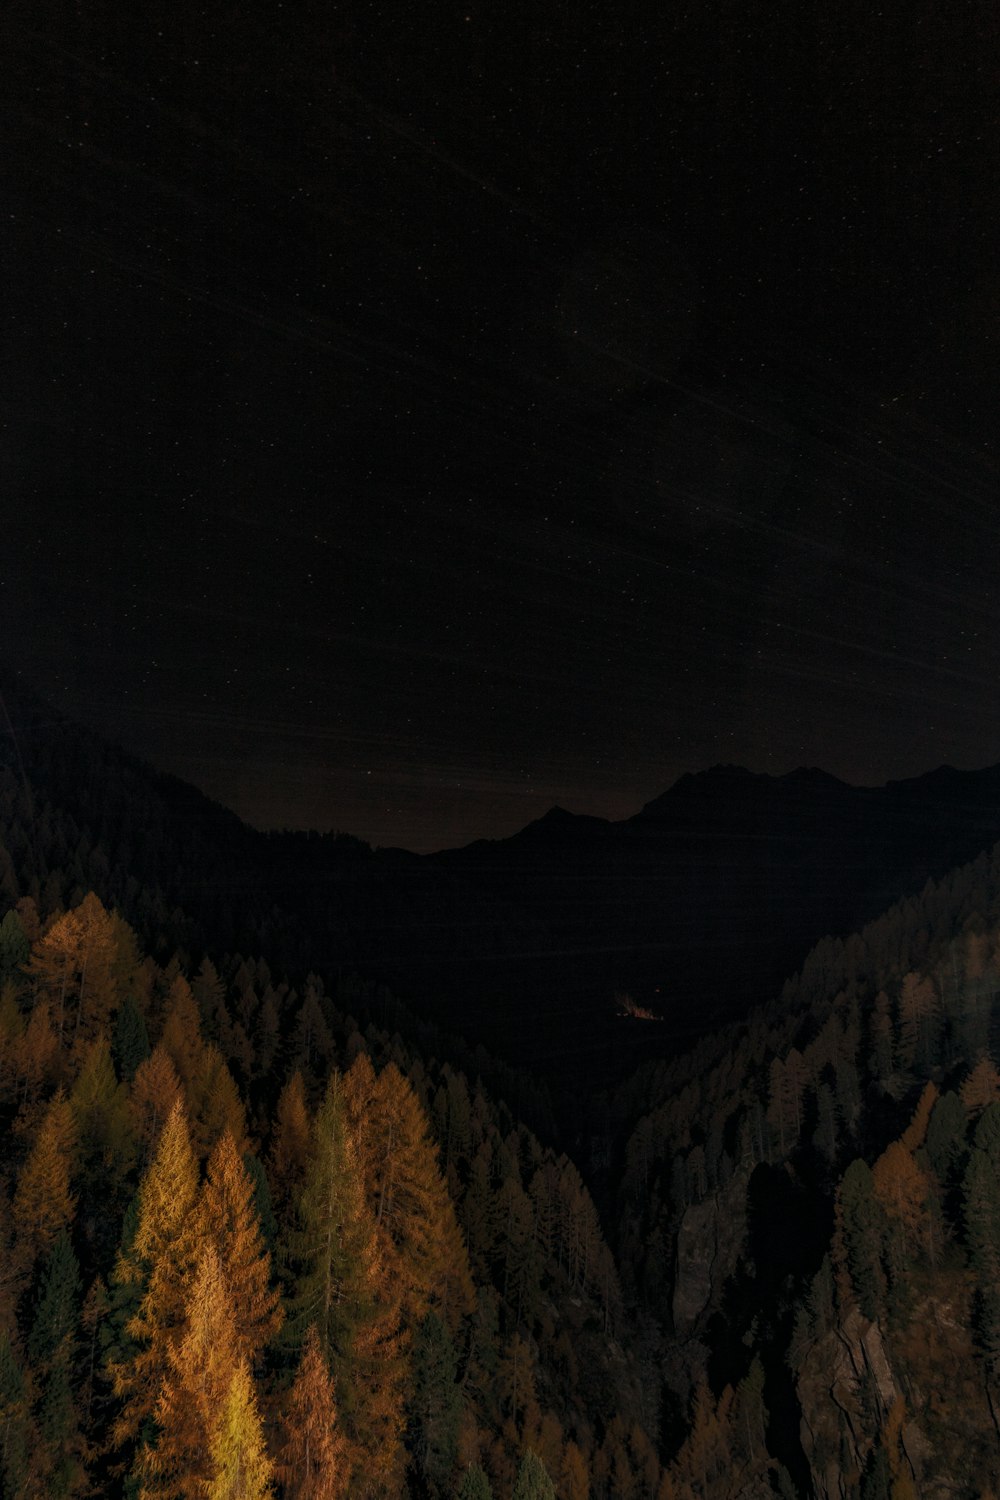 Ein Blick auf einen Wald bei Nacht von einem hohen Standpunkt aus